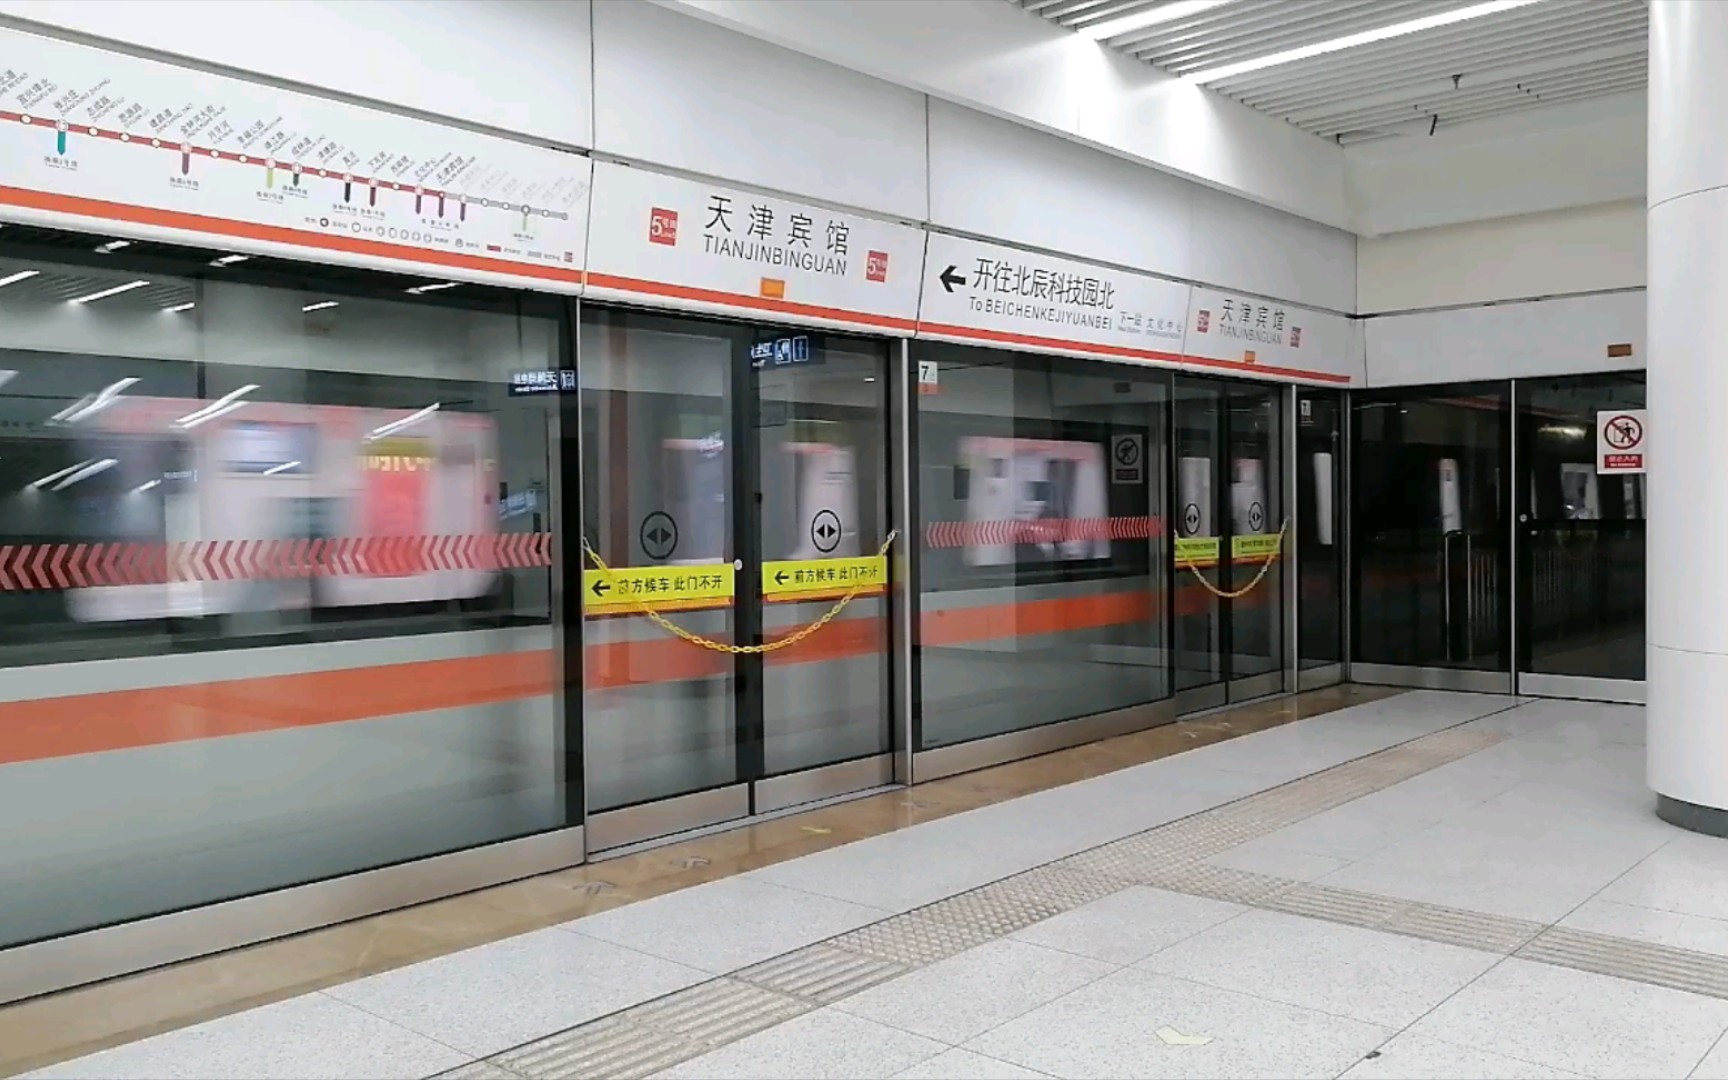 天津地铁5号线508车组北辰科技园北方向进天津宾馆站